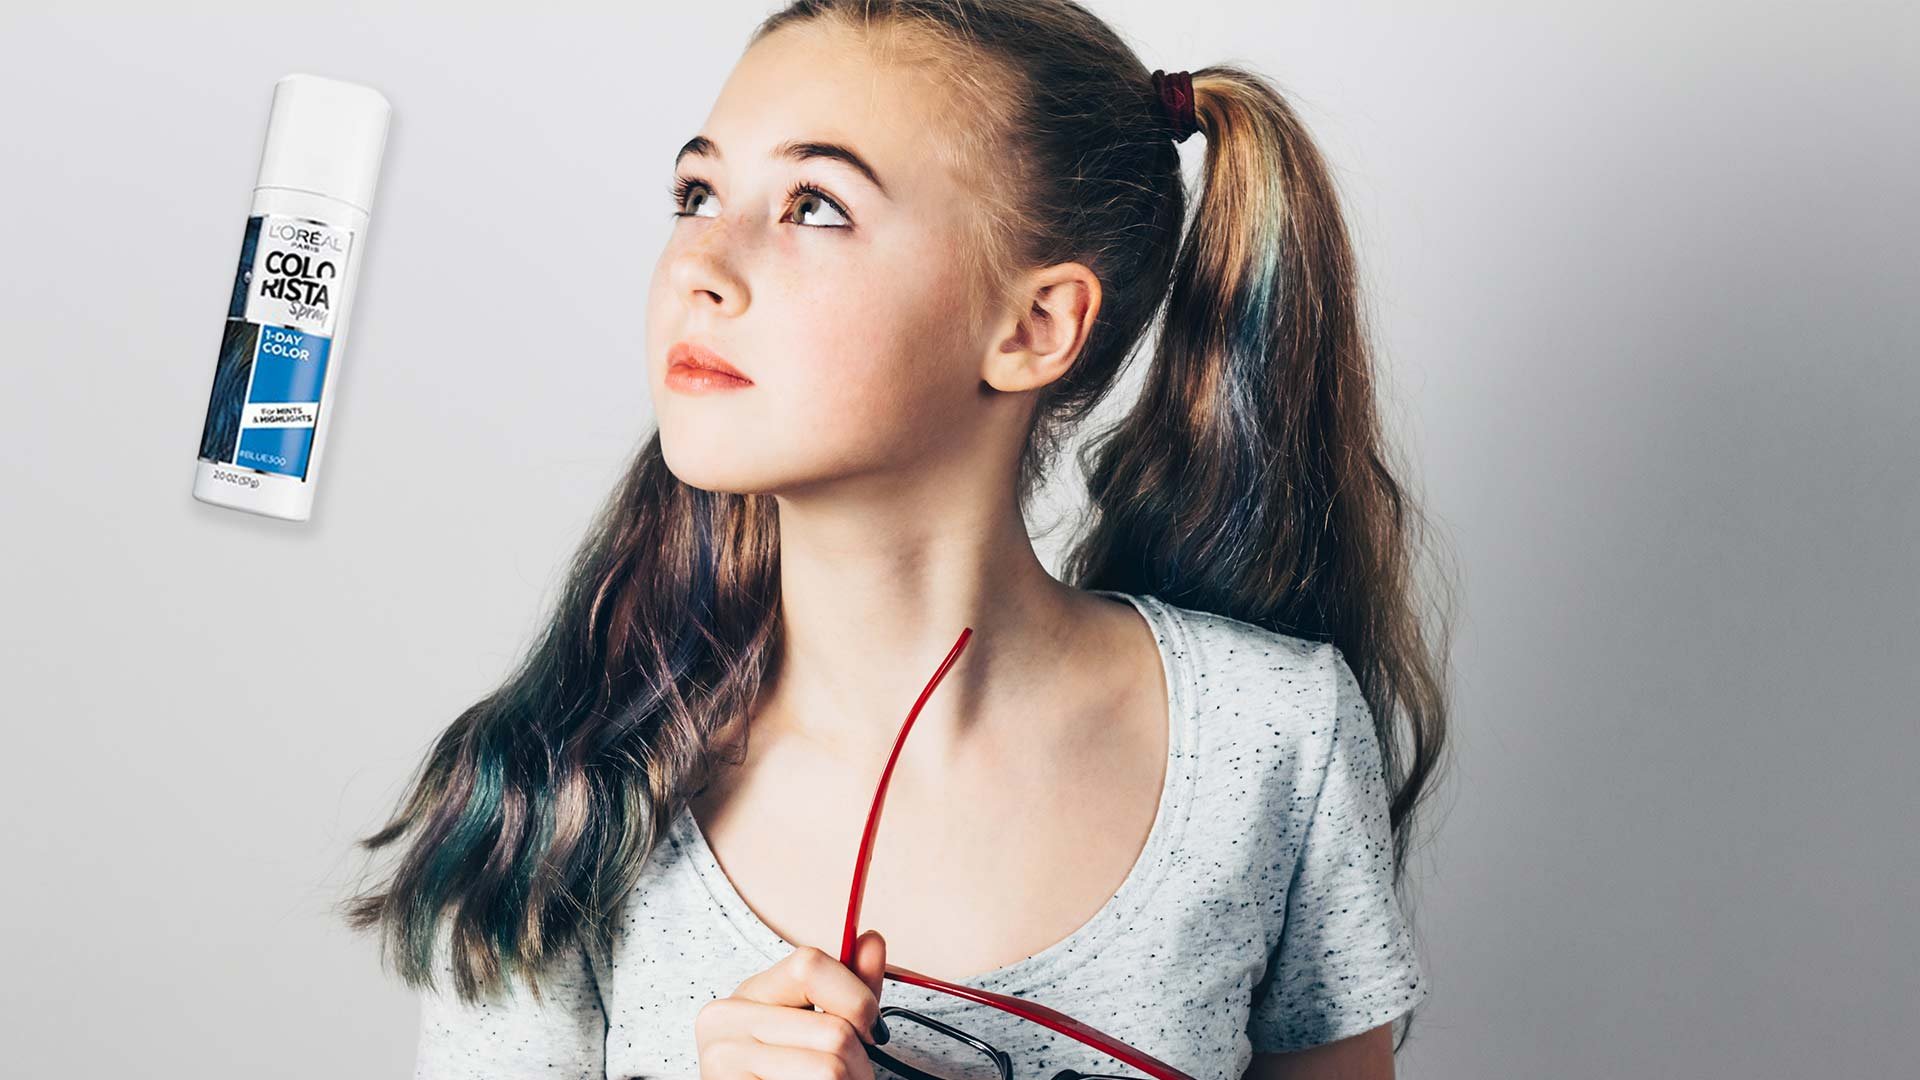 Hair Color For Kids: How to Let Them Experiment - L'Oréal Paris